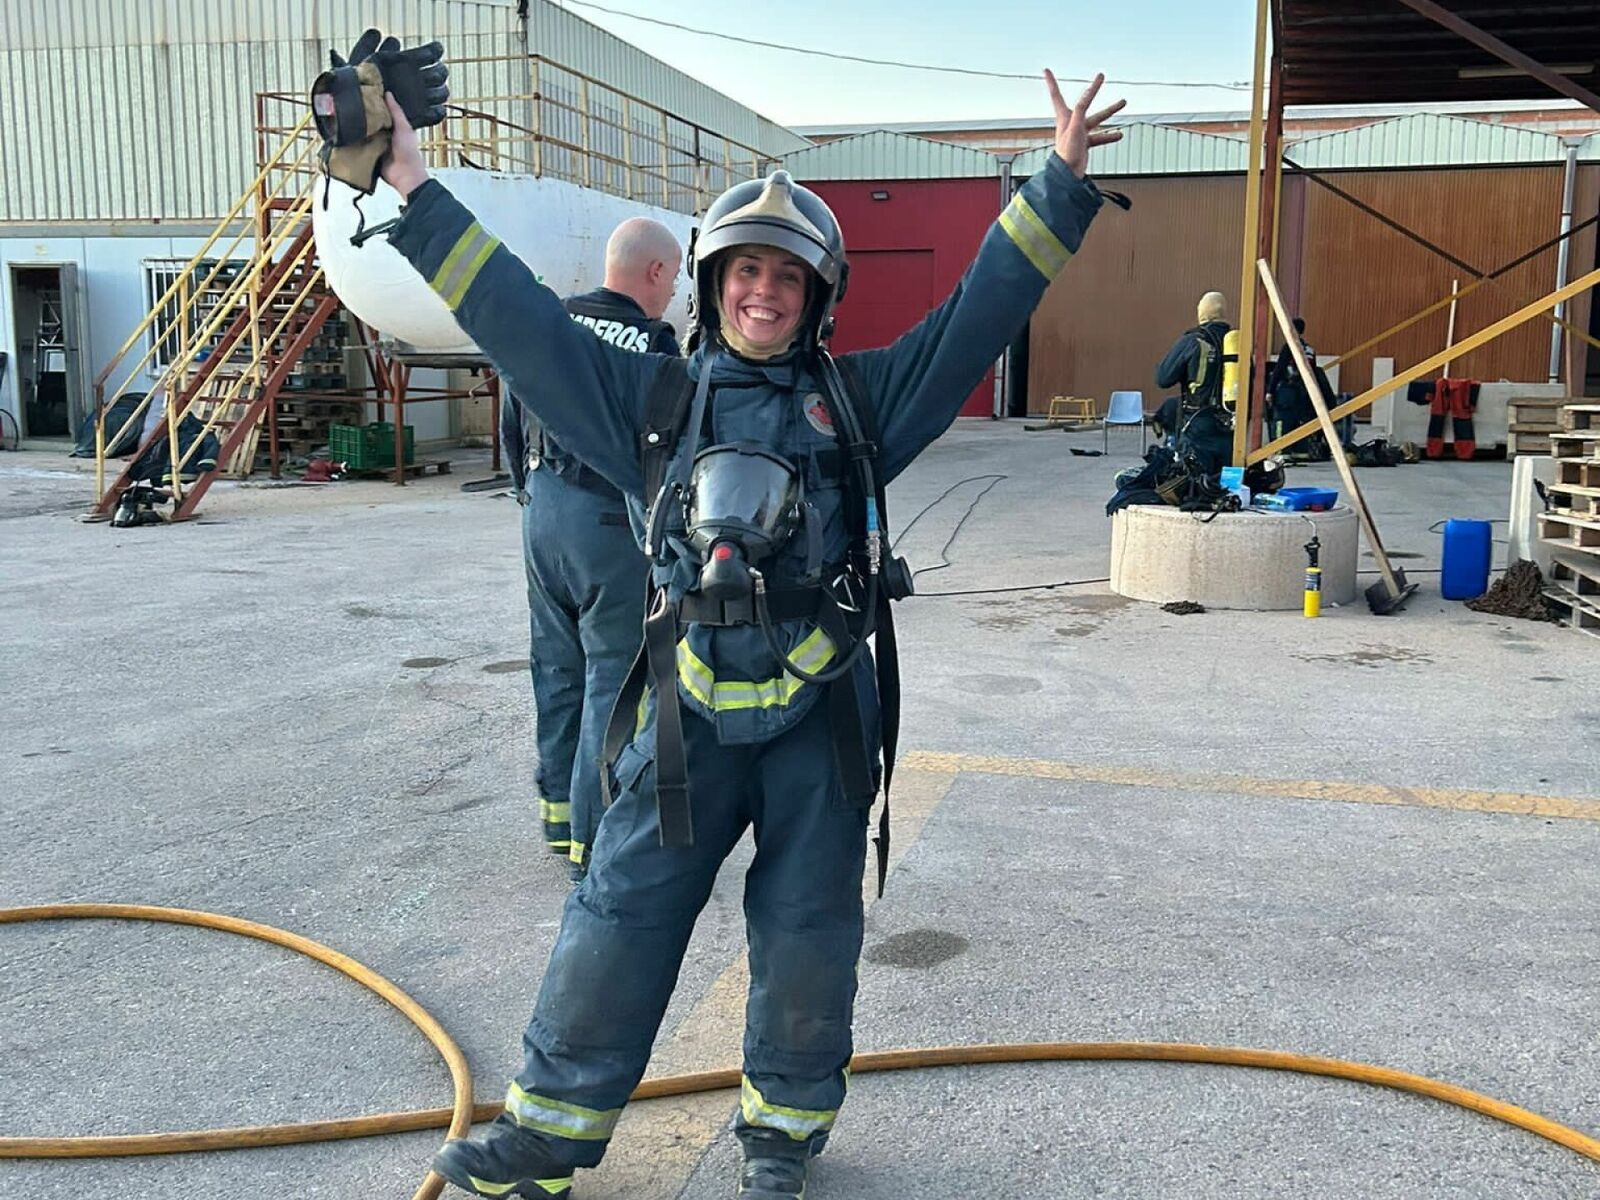 Gleden var stor da 31-årige Laura Ibánez Lopez besto alle testene for å bli brannkonstabel. Foto: privat